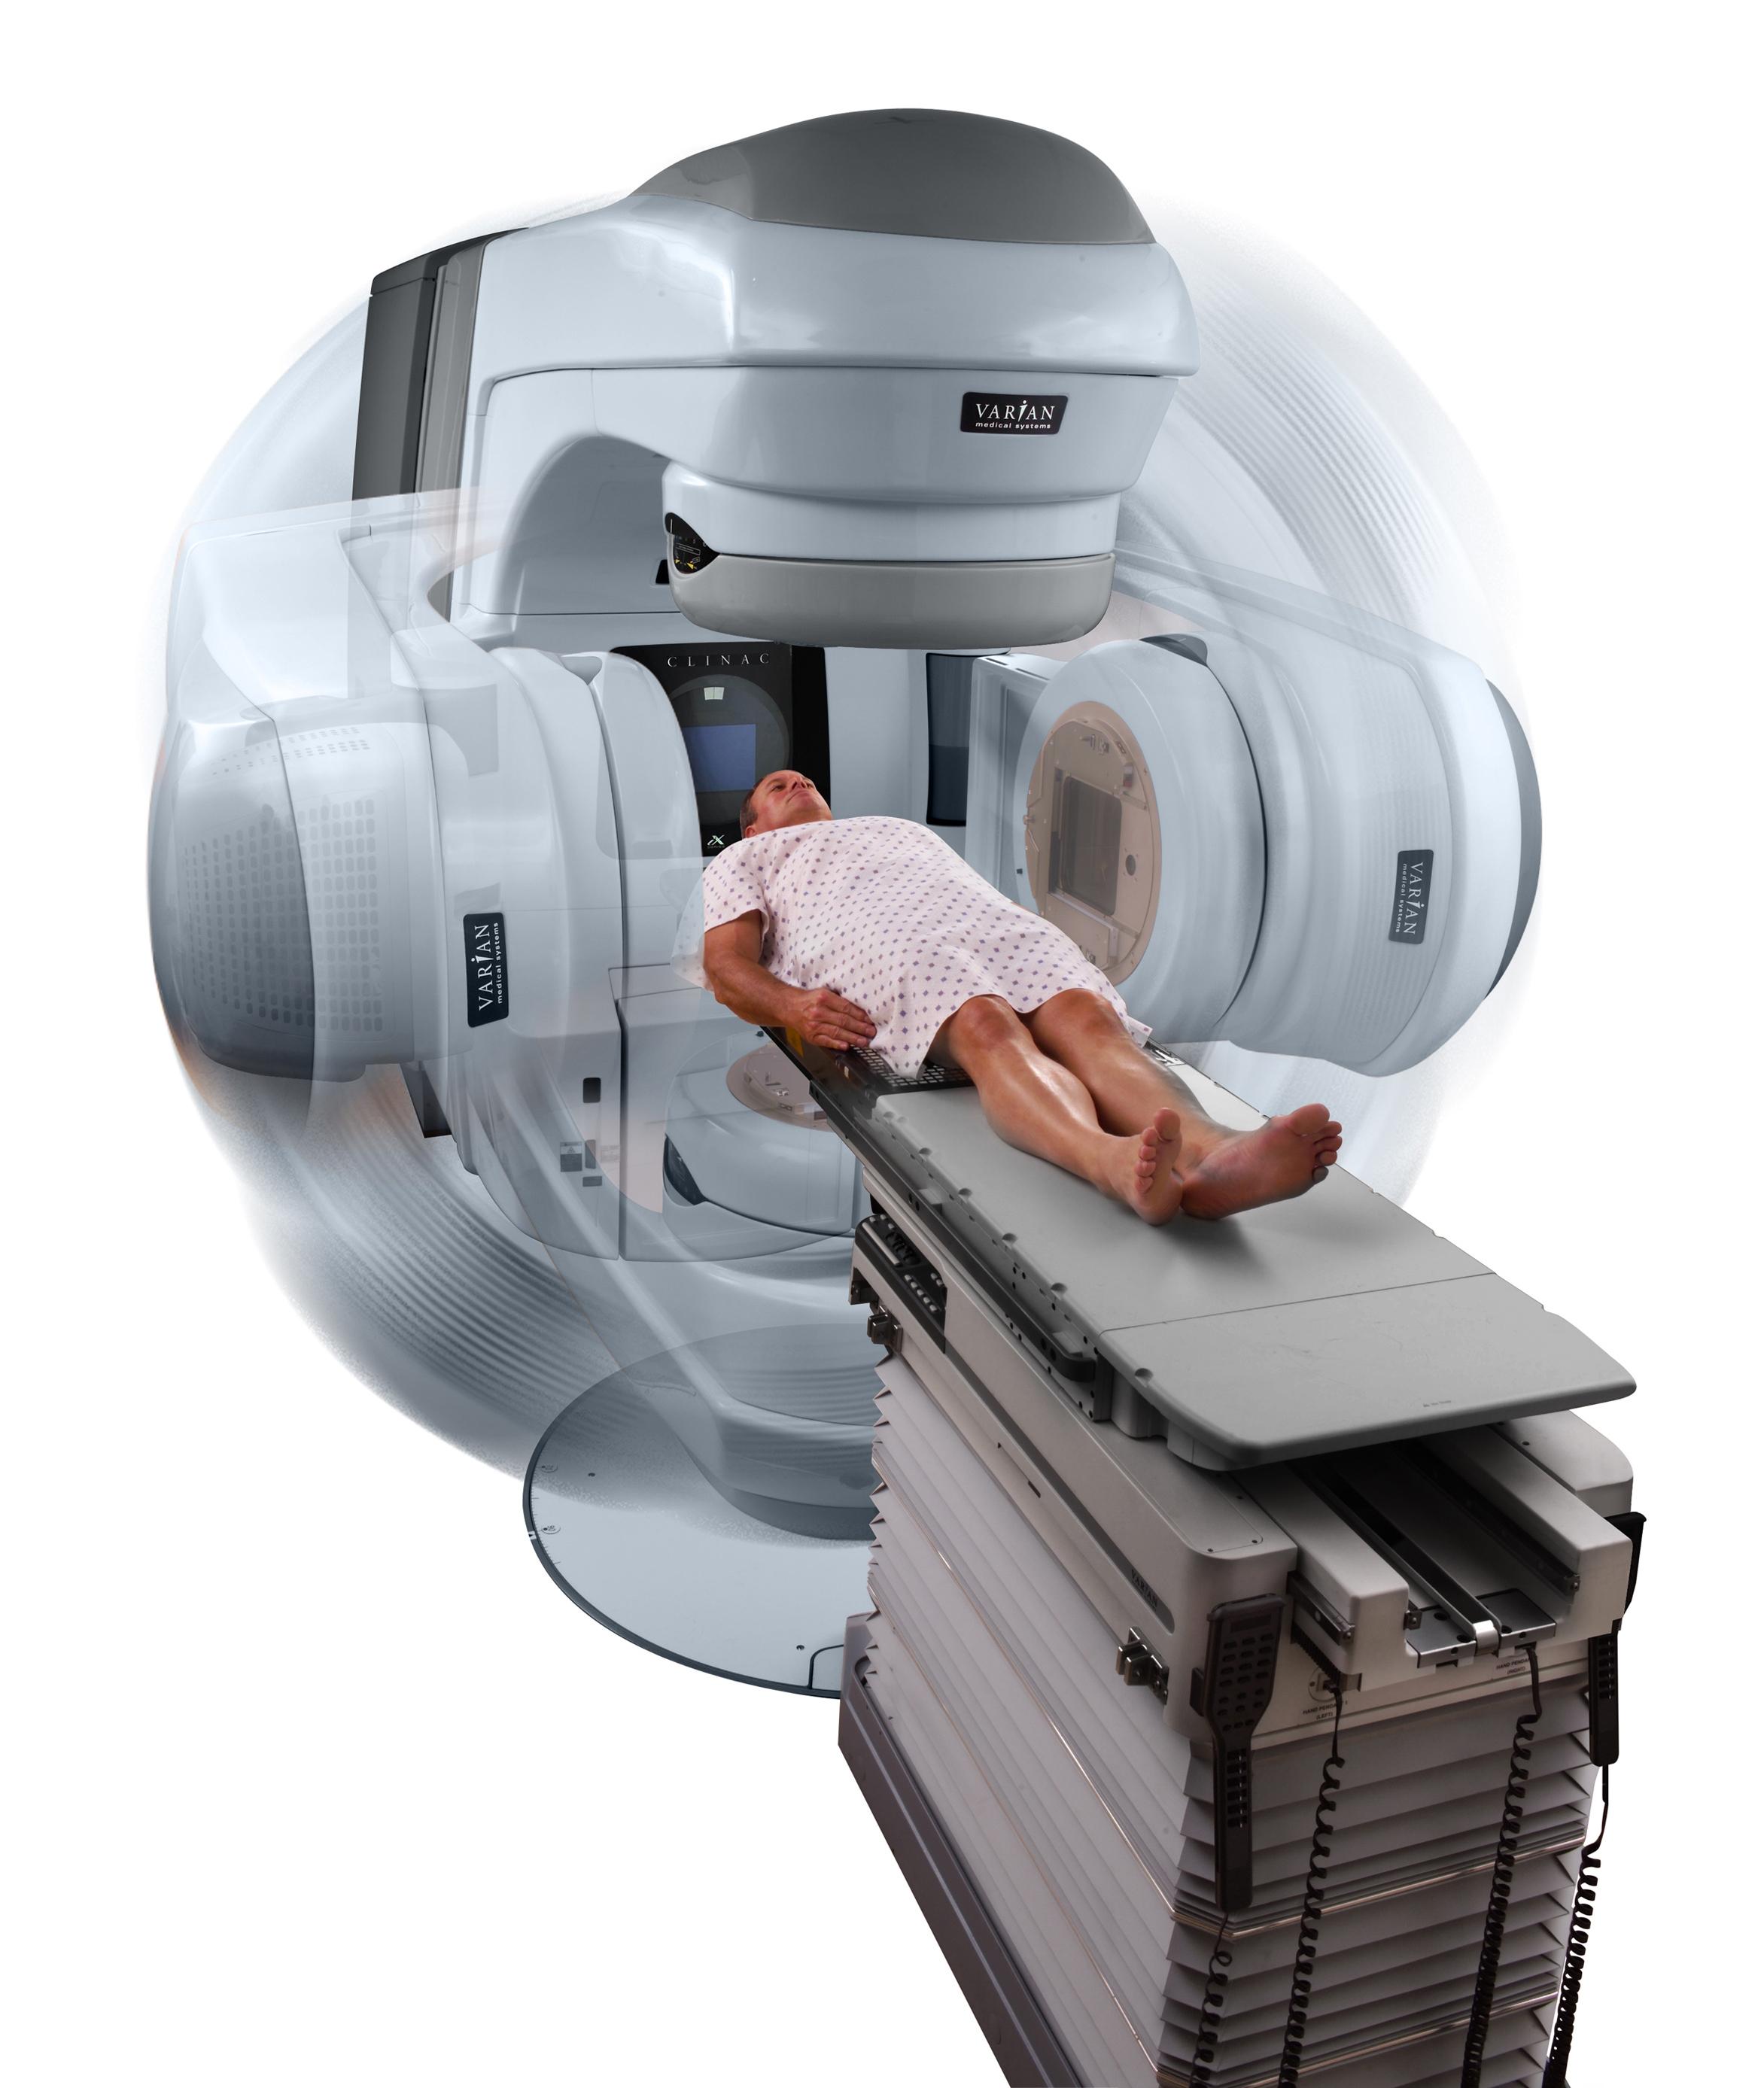 Radiotherpy advances